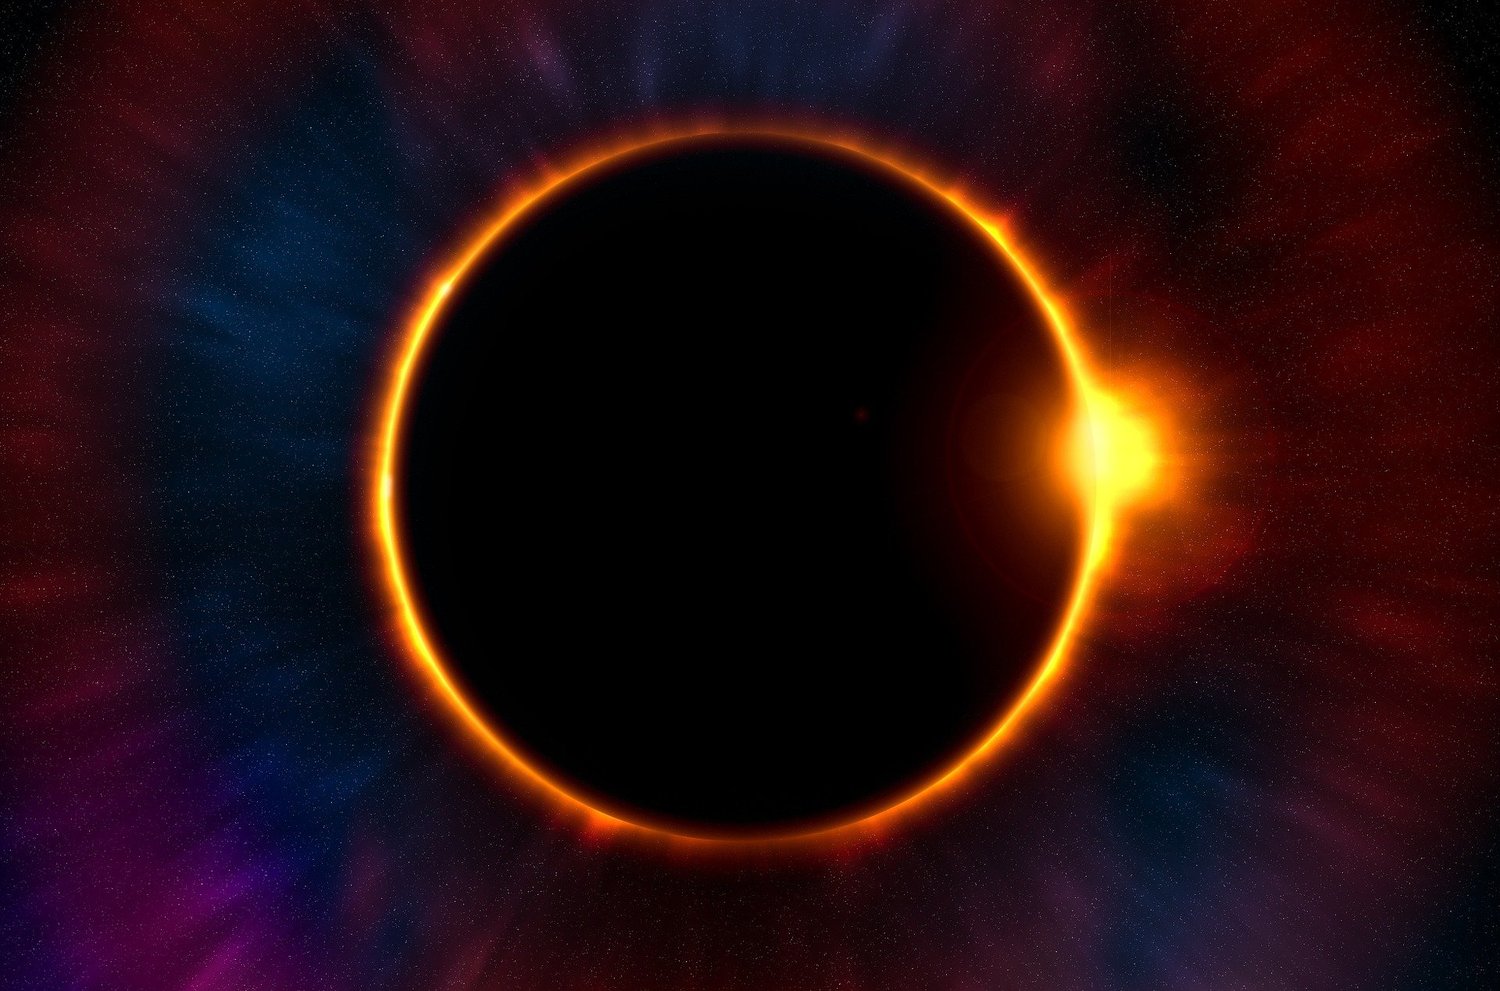 Um eclipse solar ocorre quando a Lua se interpõe entre a Terra e o Sol, ocultando a luz solar